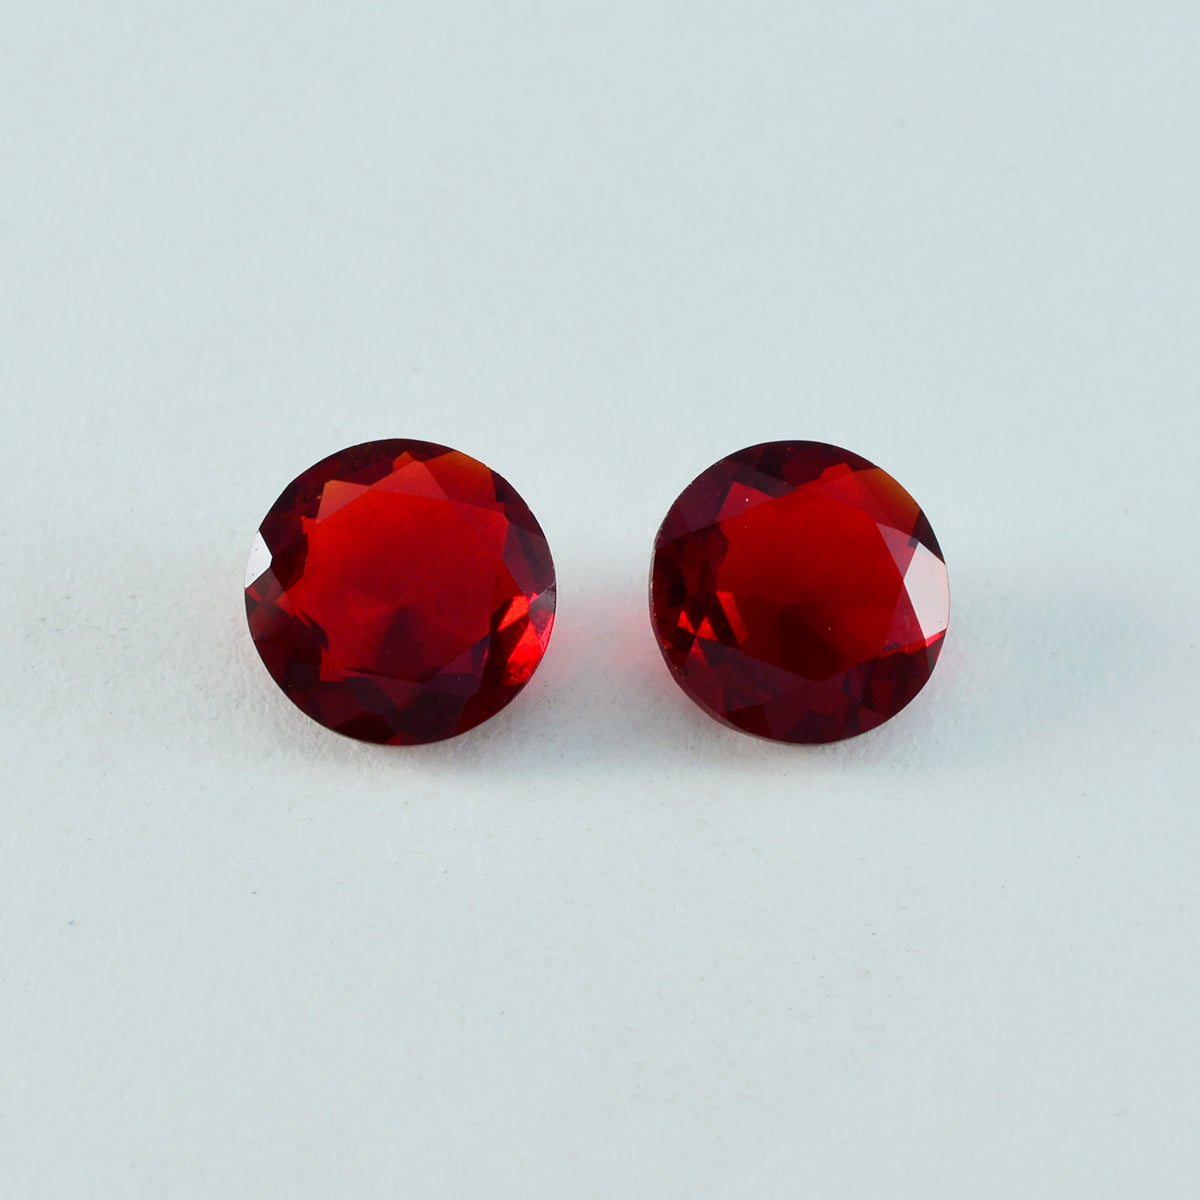 Riyogems 1 pieza rubí rojo cz facetado 12x12mm forma redonda piedra de buena calidad